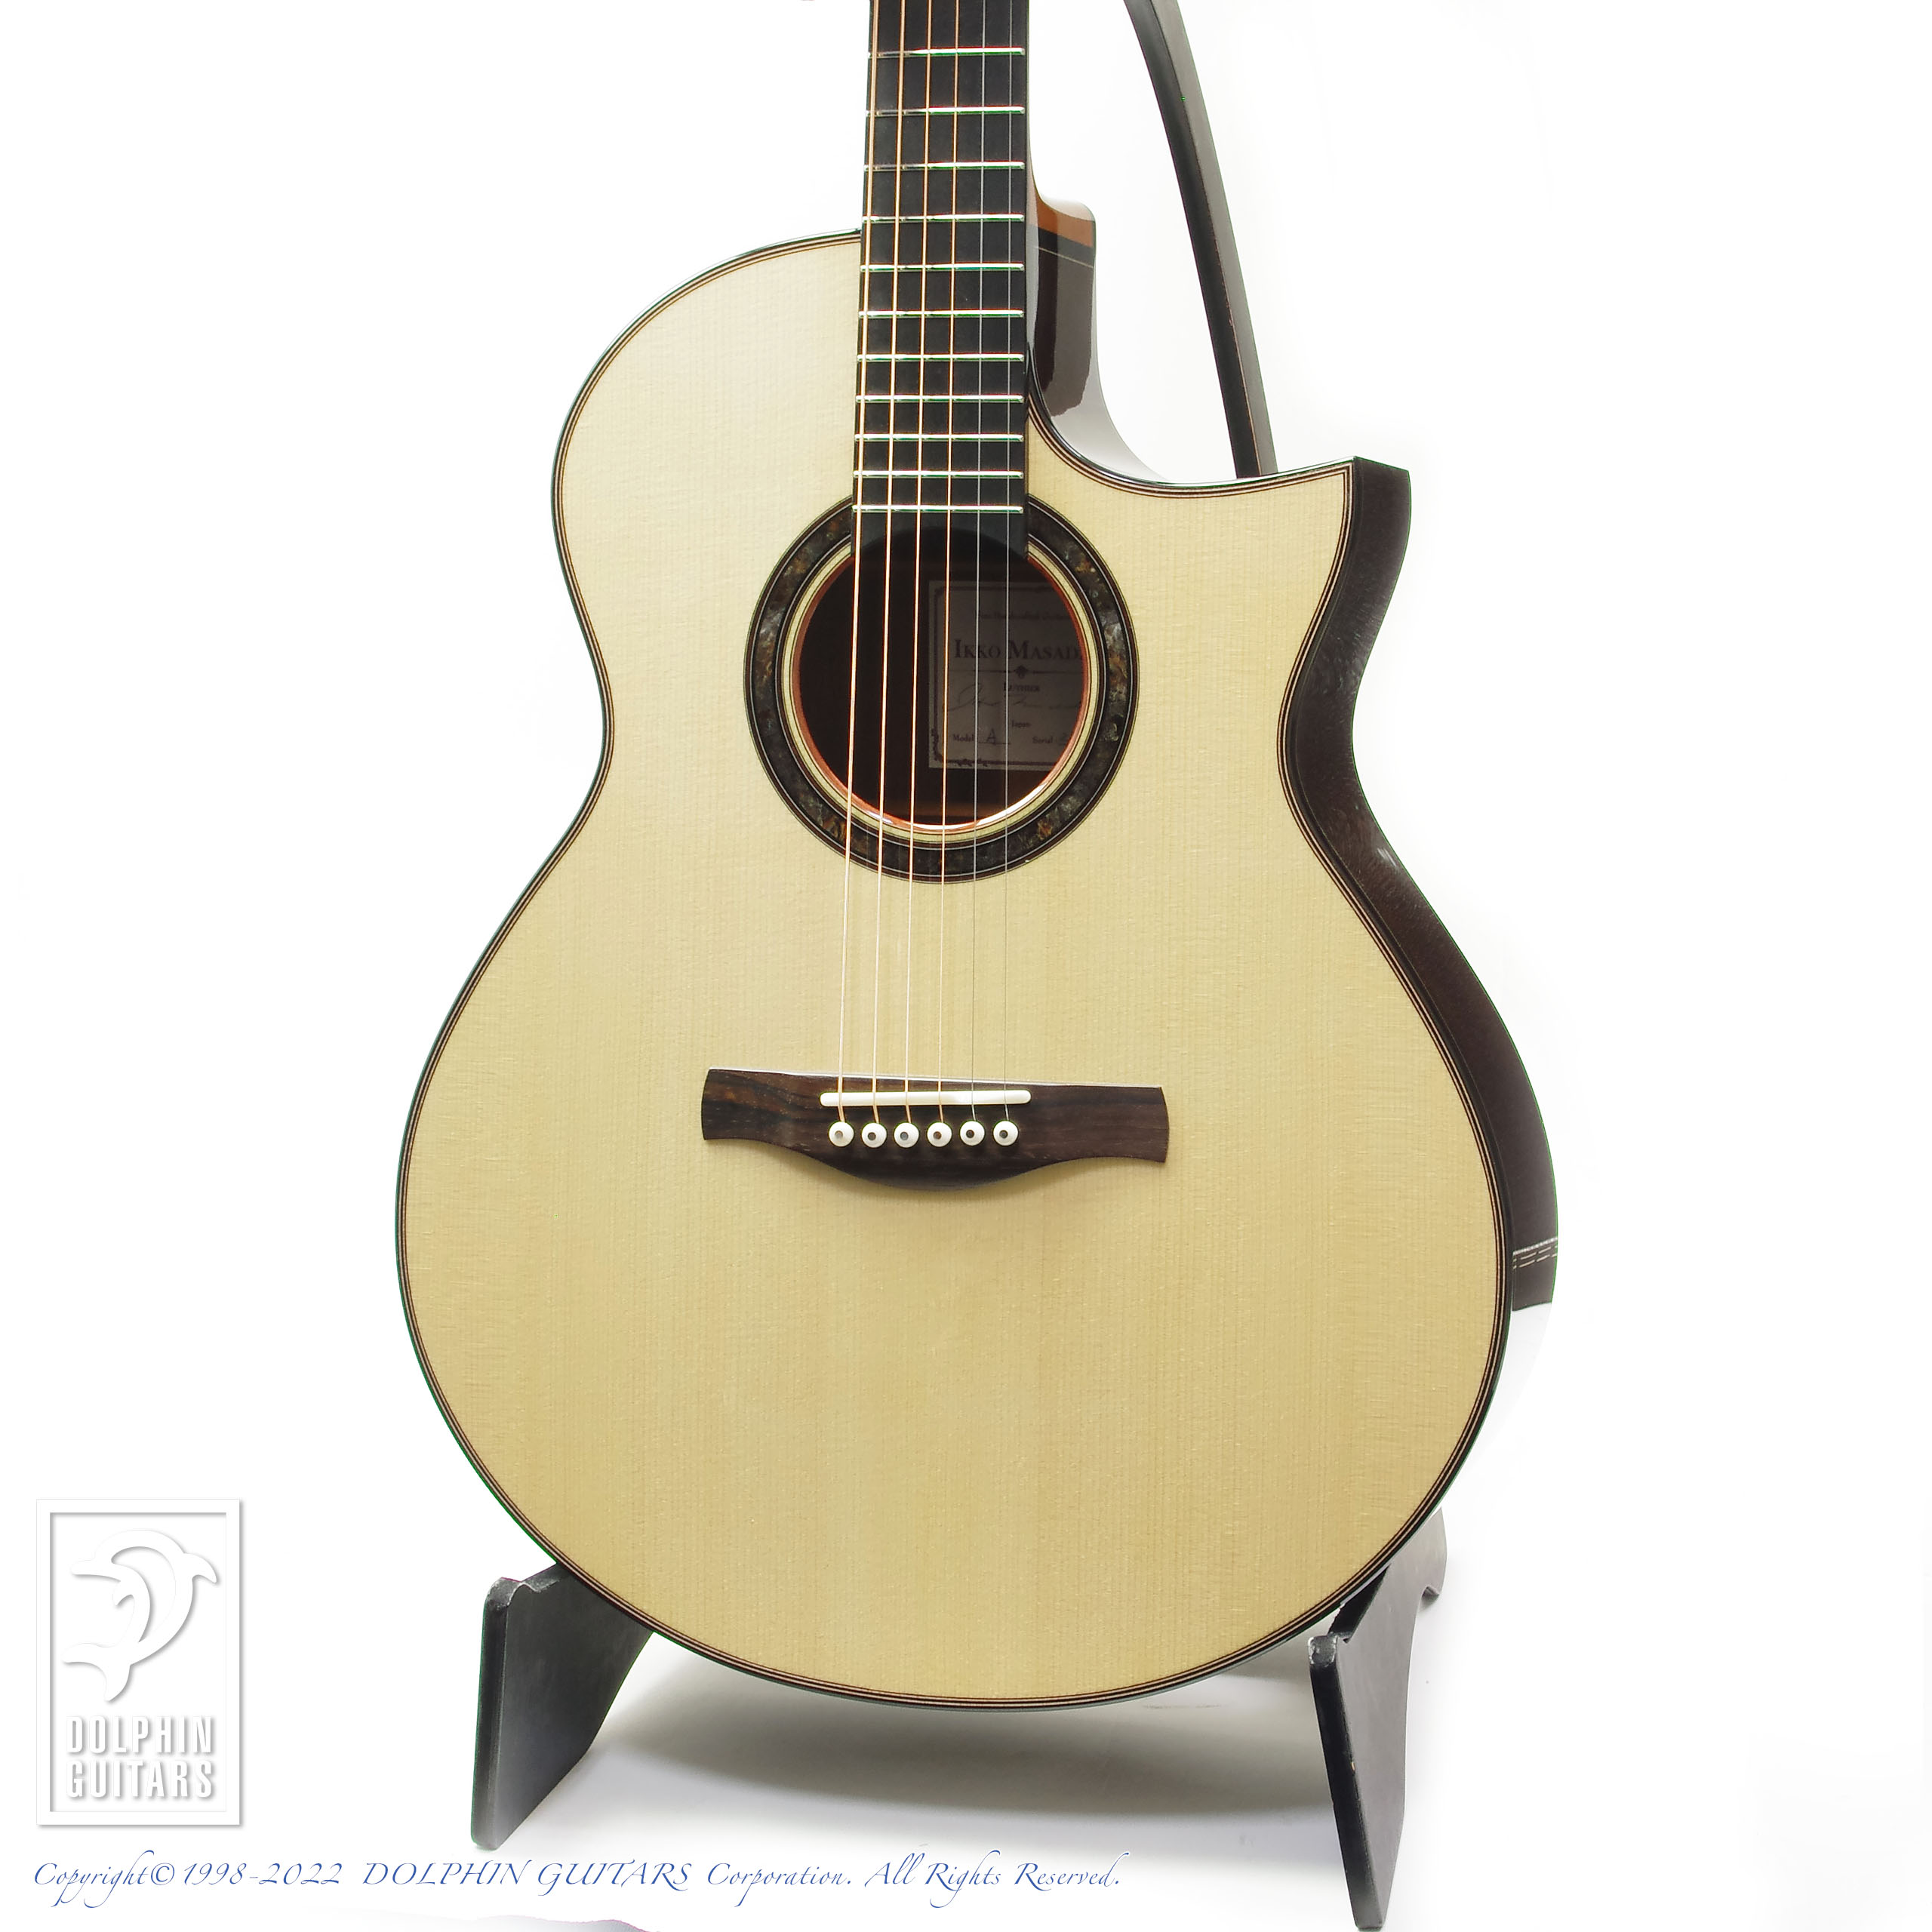 13054円 年末年始大決算 KLKL スプルースベニアギター全シングルギターメイキング材料 ギタービルダーキット Color : 11